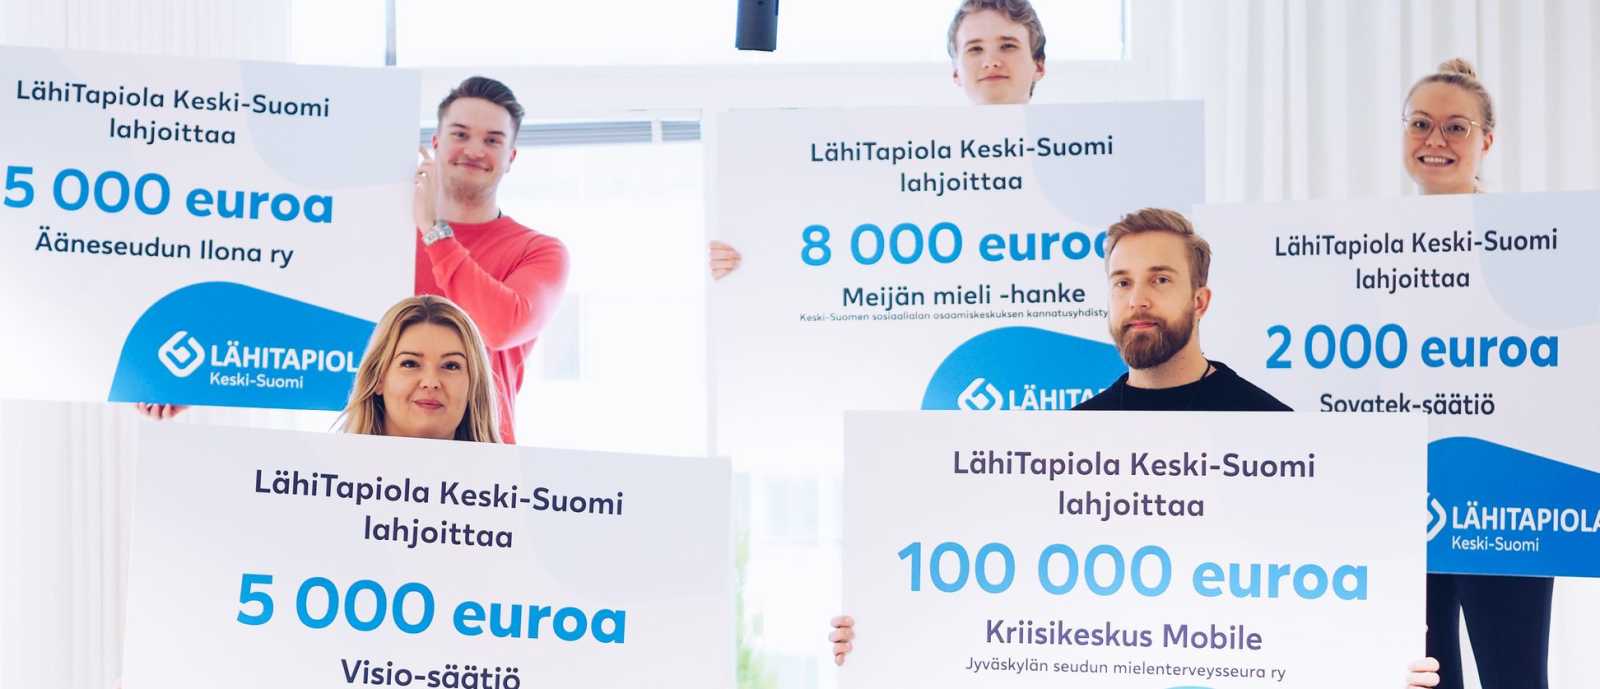 LähiTapiola Keski-Suomen lahjoitukset syksy 2021